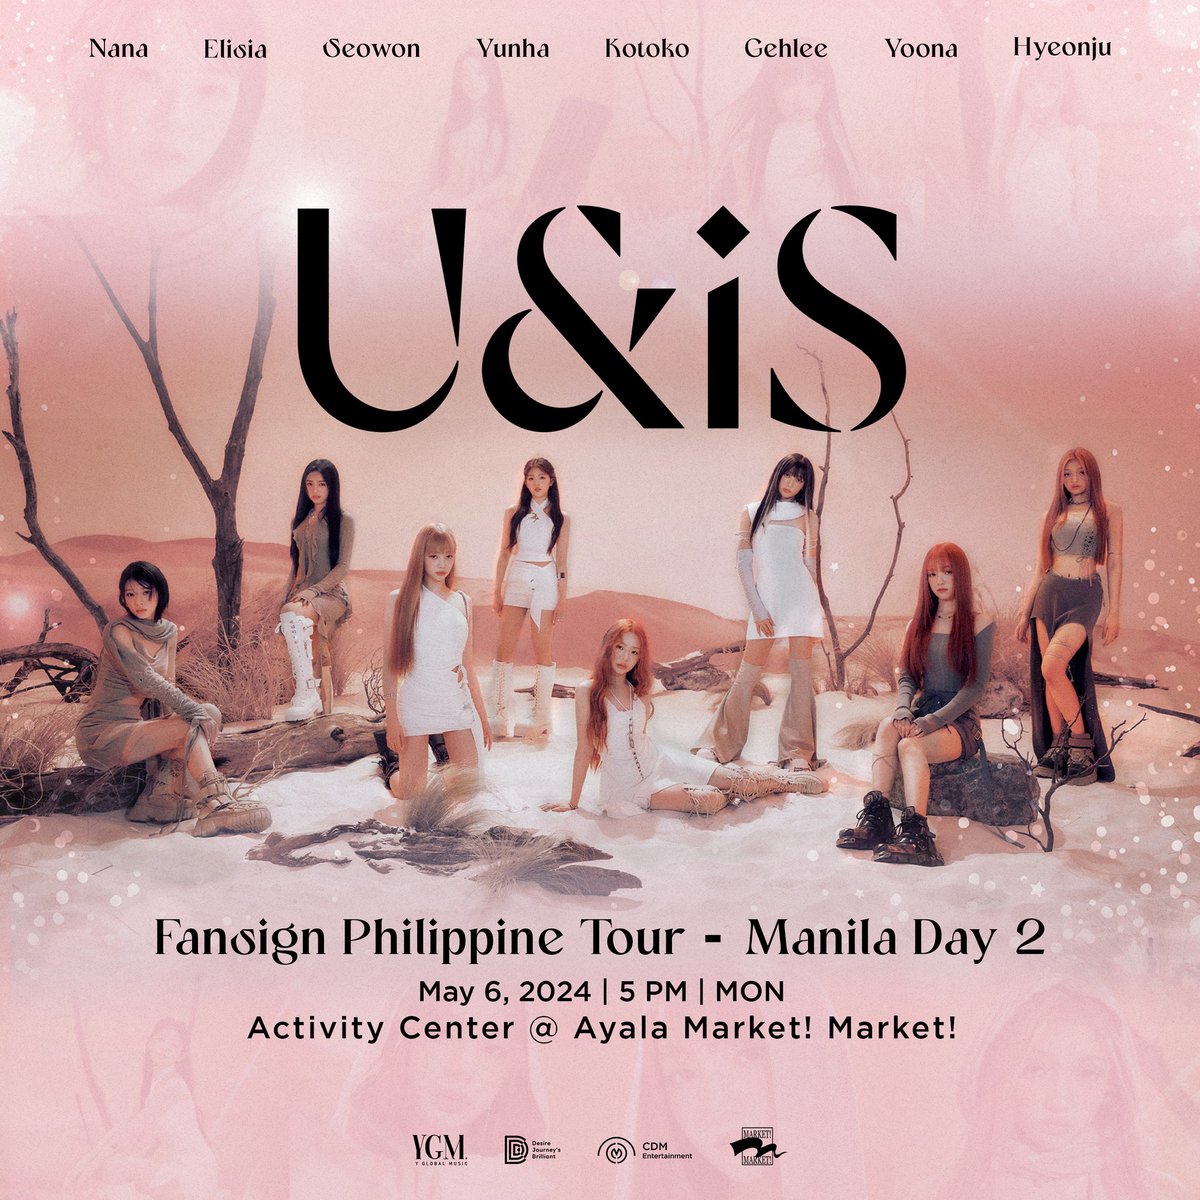 #UNISinMANILA_Day2 album sets are now available!

U&iS FANSIGN PHILIPPINE TOUR
🗓️ May 6, 2024
📍 Activity Center, Ayala Market! Market!
💿 cdmentertainment.ph/UNIS-Fansign-P…

Presented by @cdmentph

#UNIS_Philippine_Tour #UNISinMANILA #UNISinCEBU